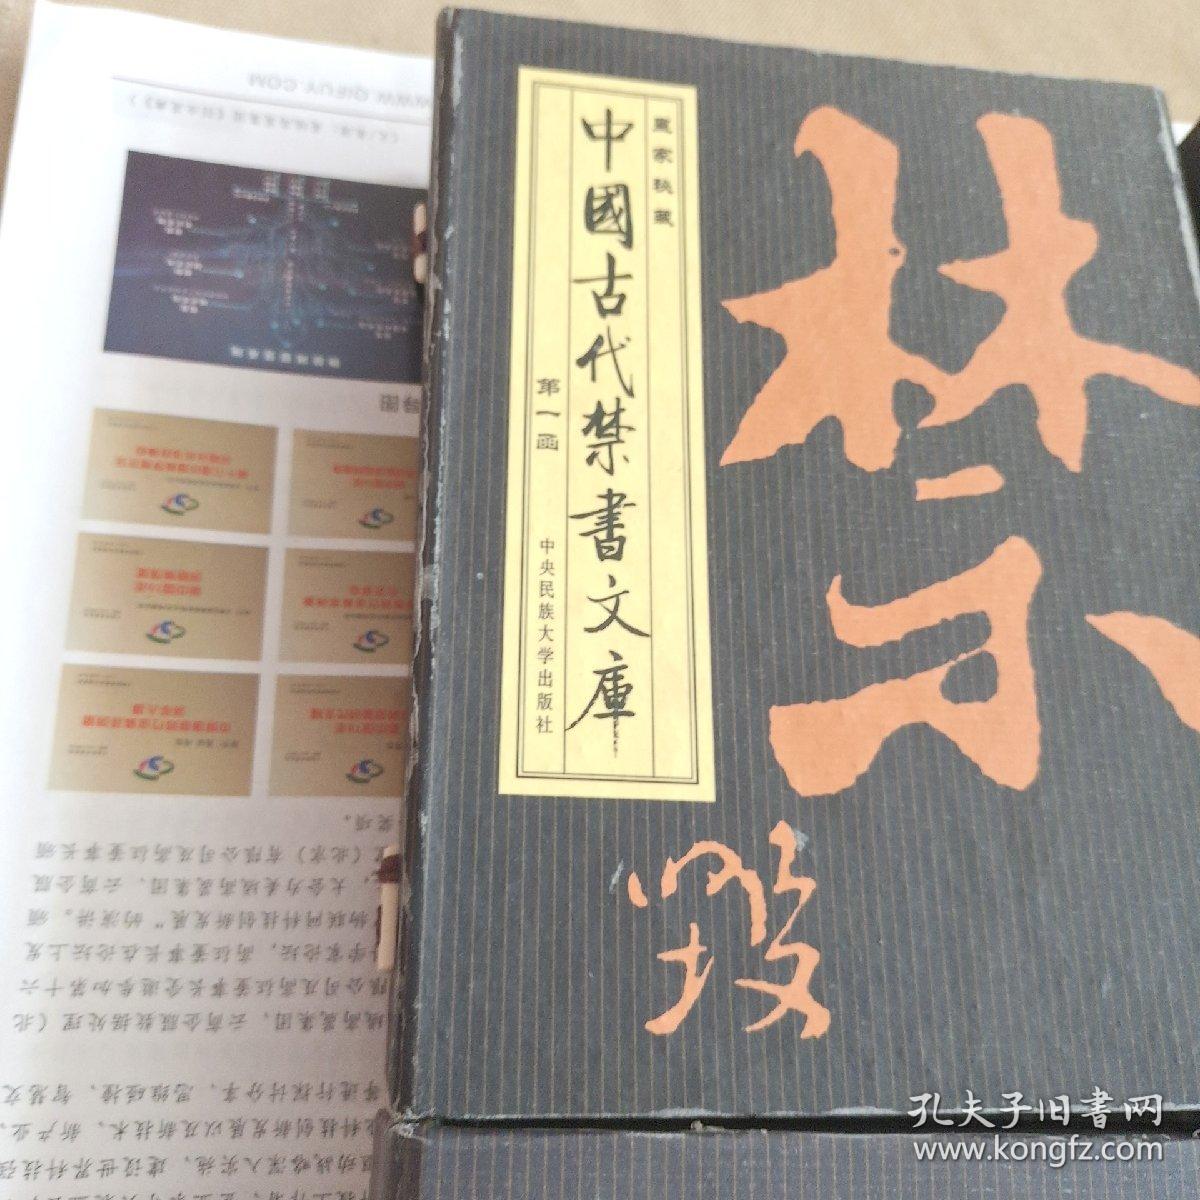 中国古代禁书文库(宣纸，详见图